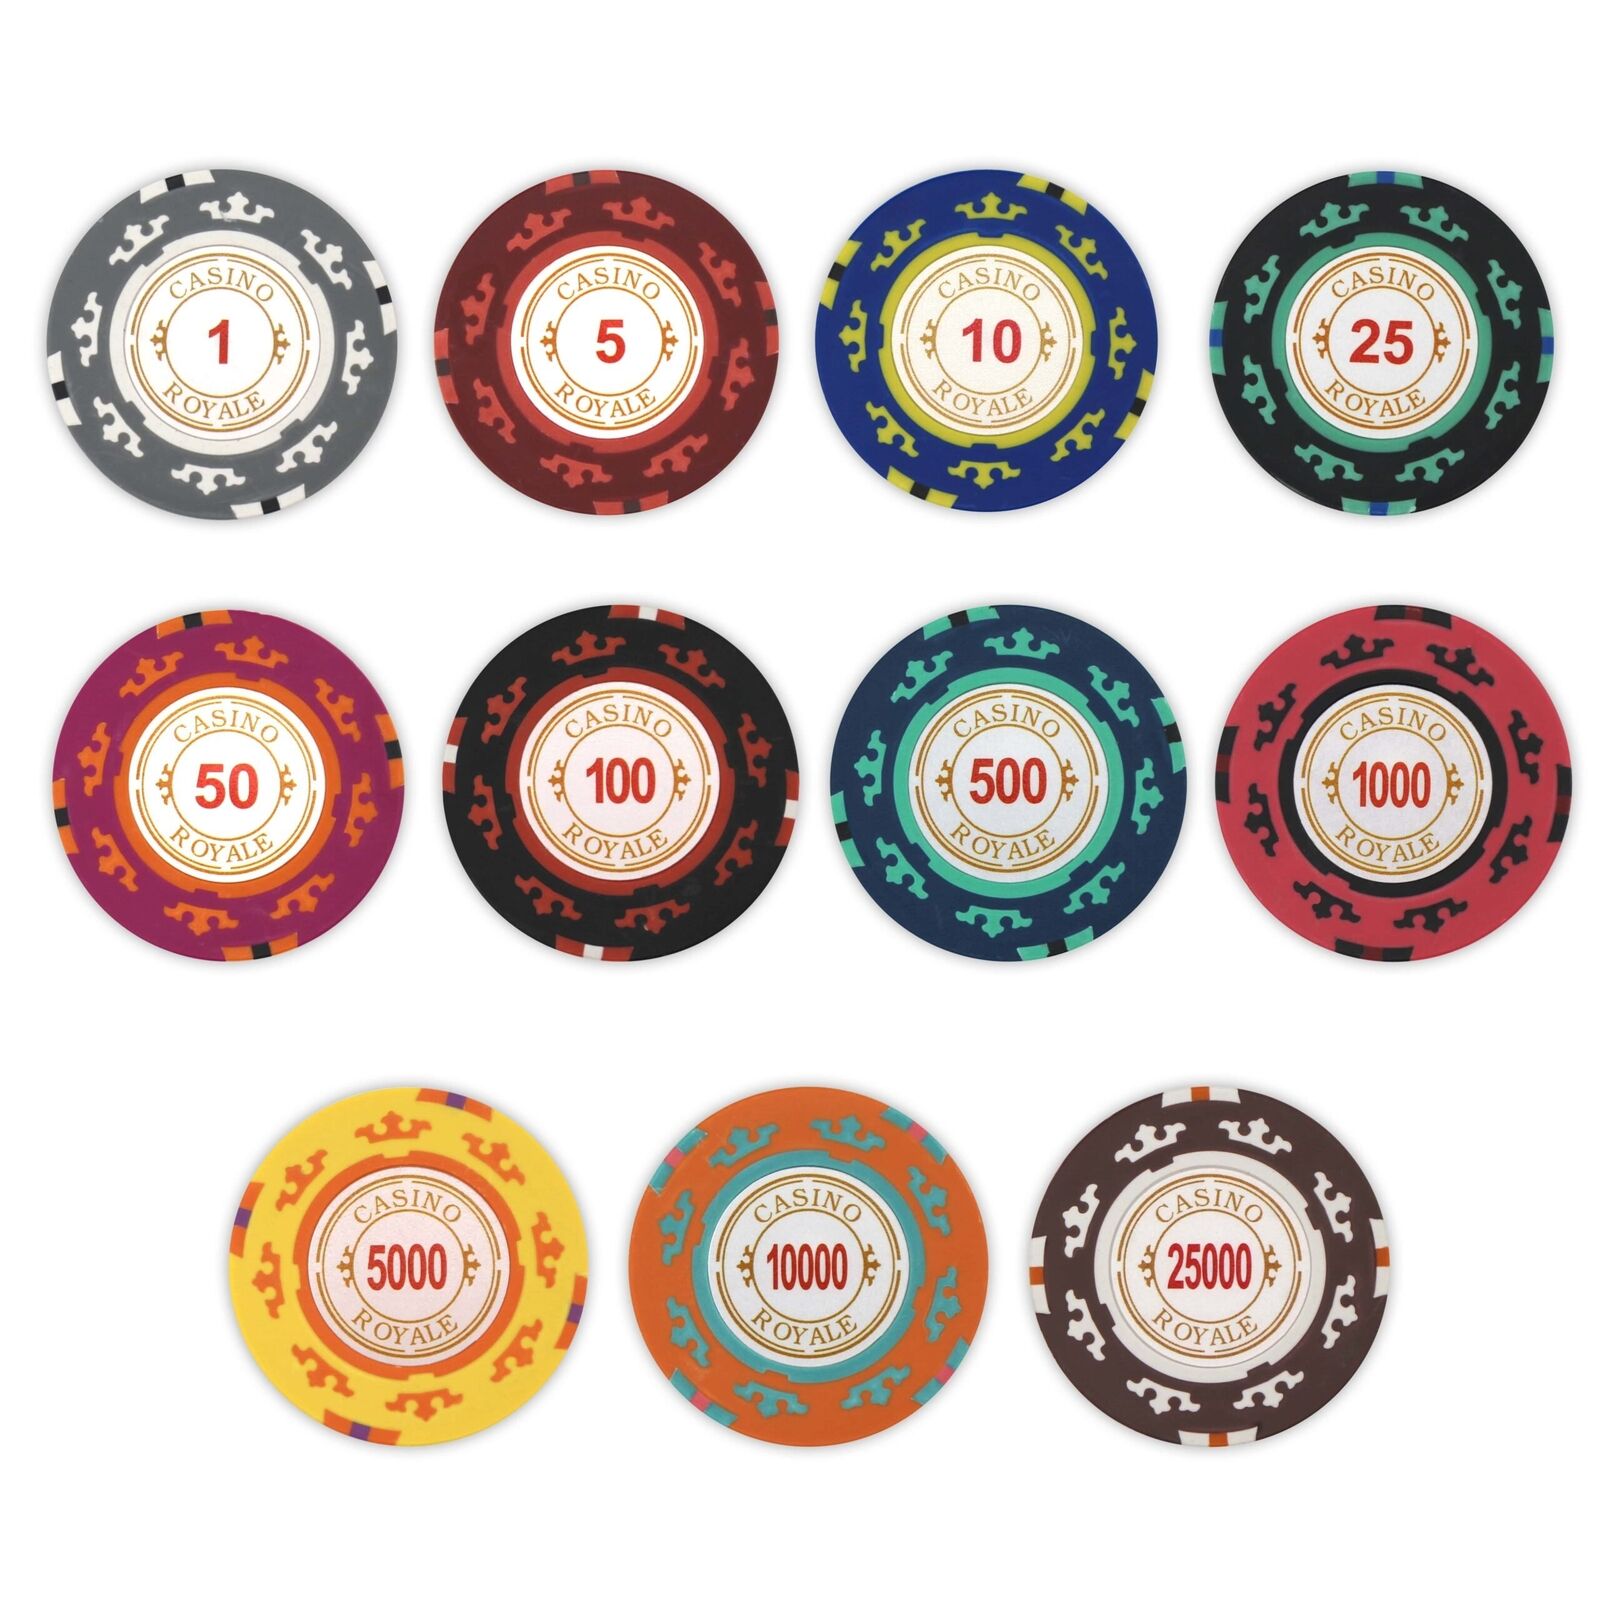 Casino Royale Poker Chips - SAMPLE PACK Set - 11 Denominations - 14 Gram NEW